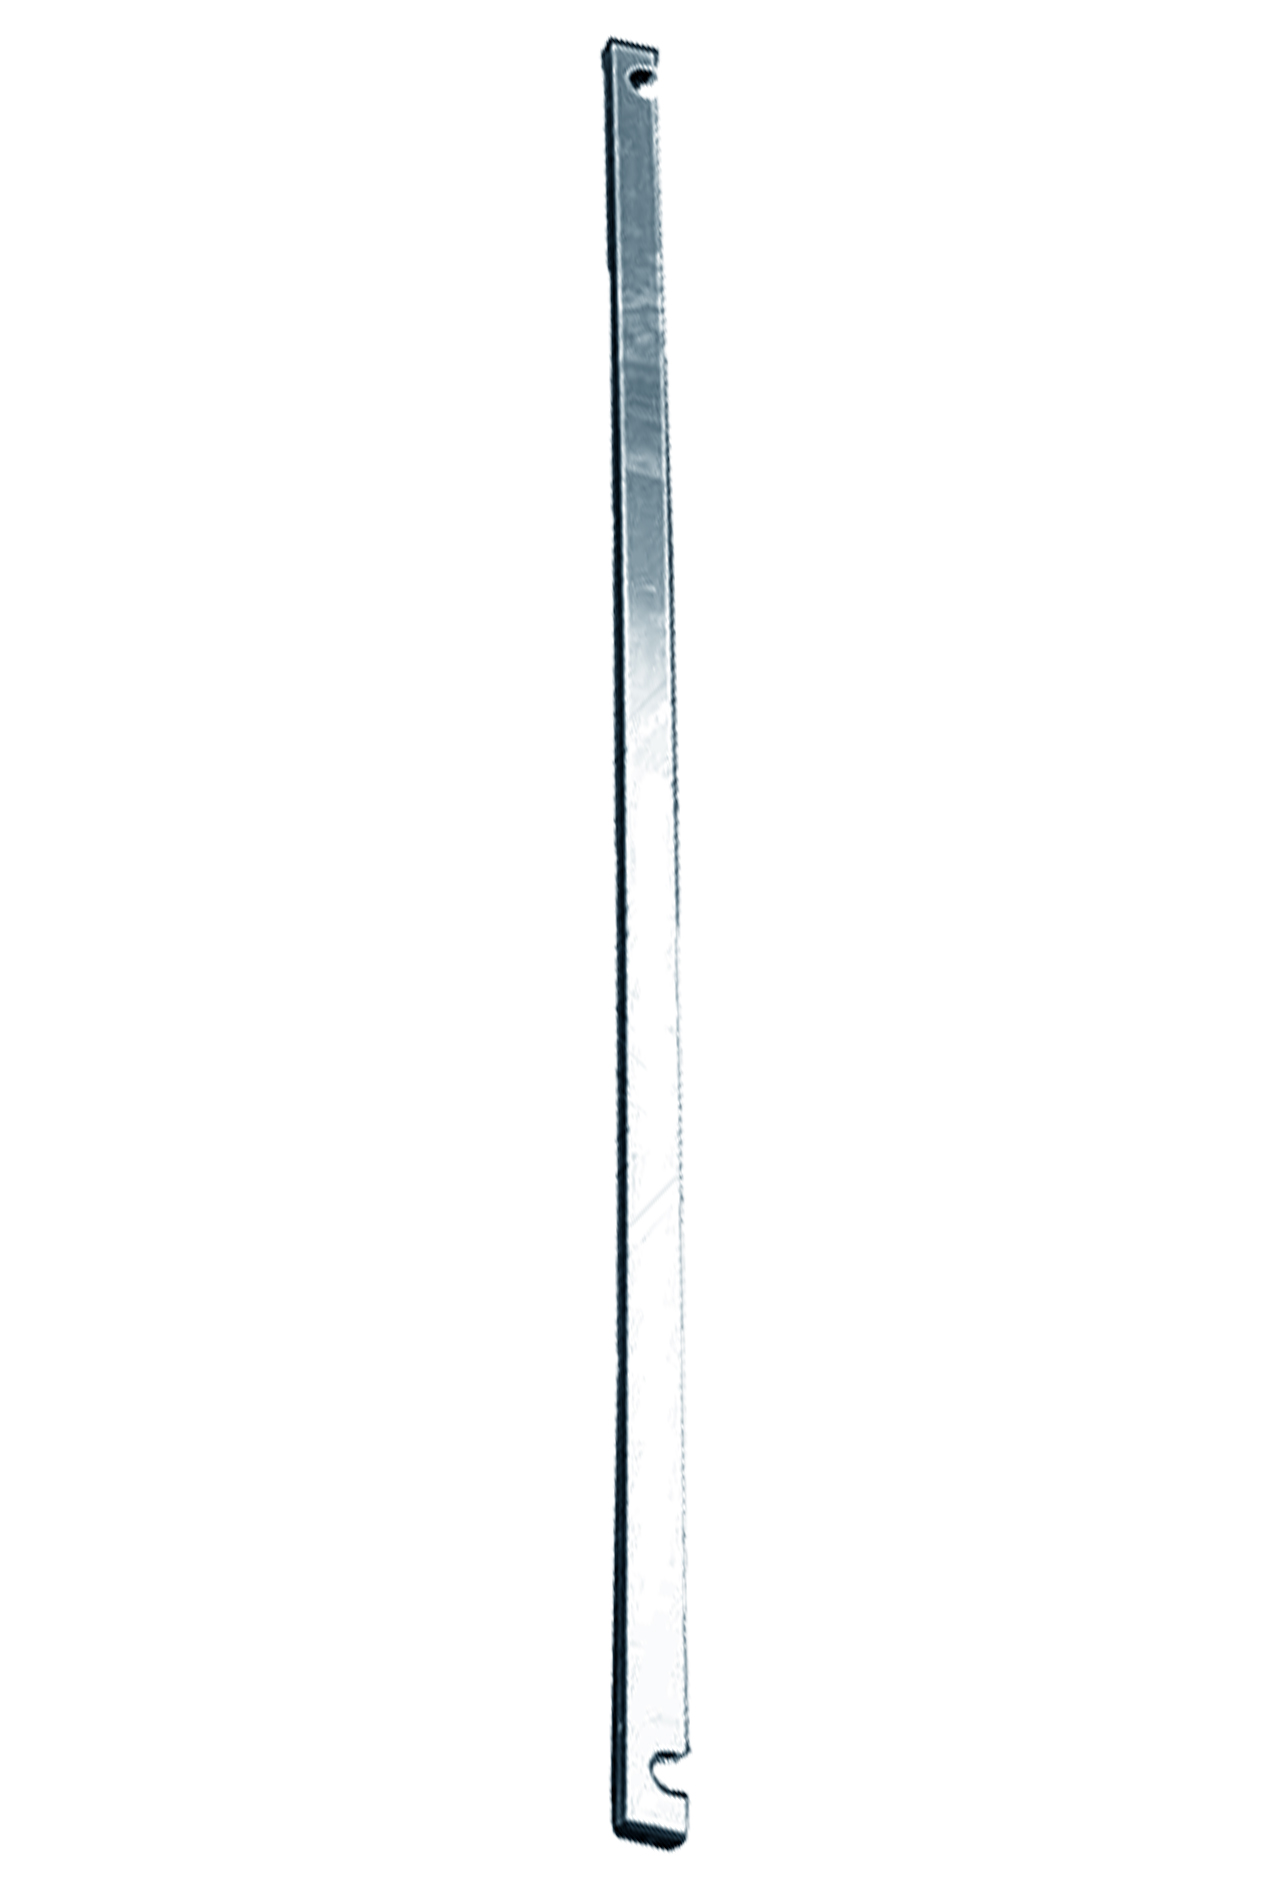 Дополнительное изображение STABILO 100-3 Передвижные подмости, рабочая высота 9,3 м, размер площадки (3.0x0.75 м)